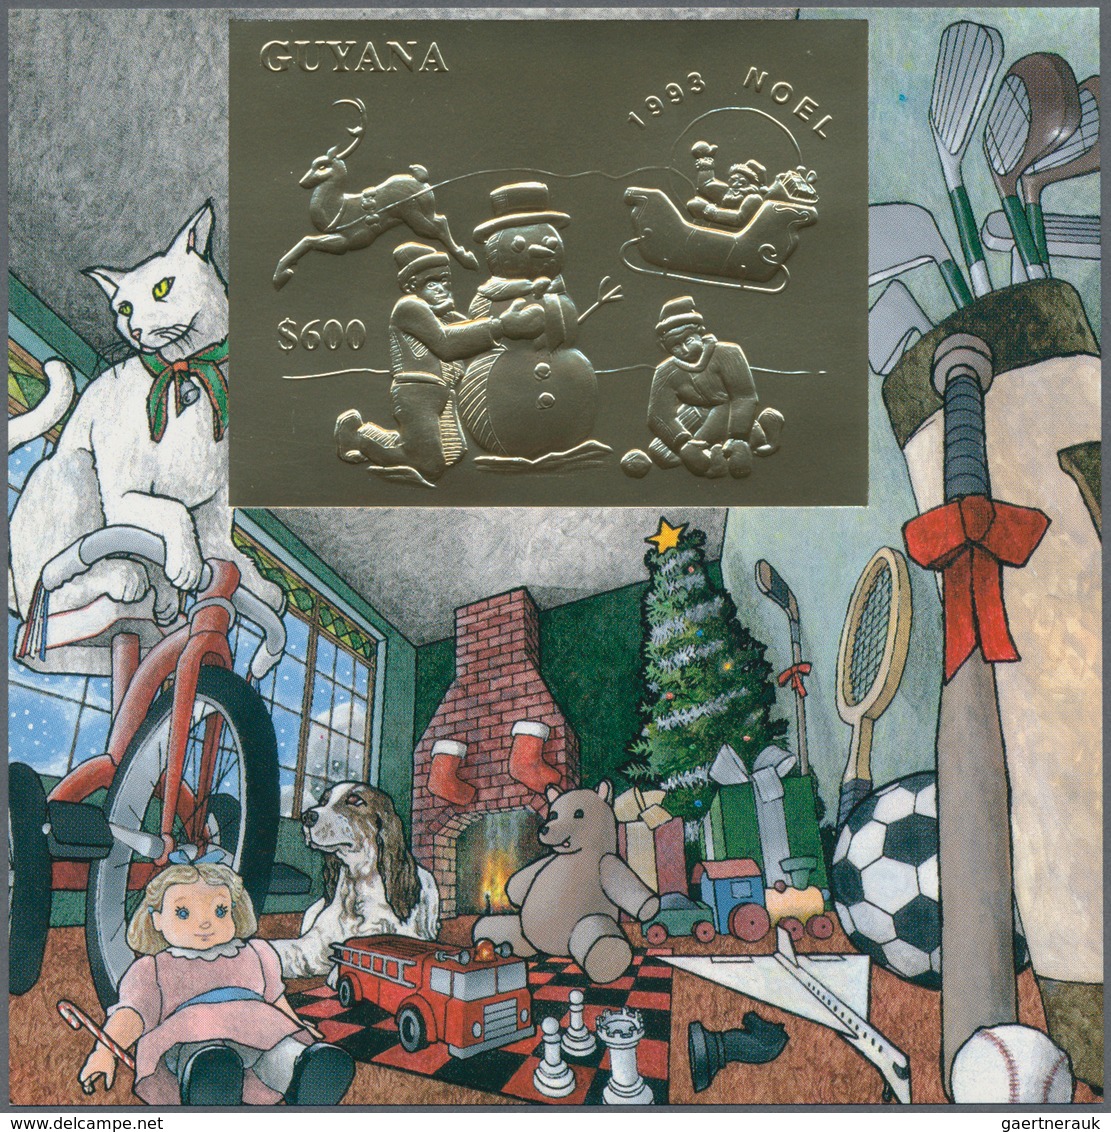 25898 Thematik: Weihnachten / christmas: 1993, Guyana. Set of 8 different souvenir sheets CHRISTMAS, each